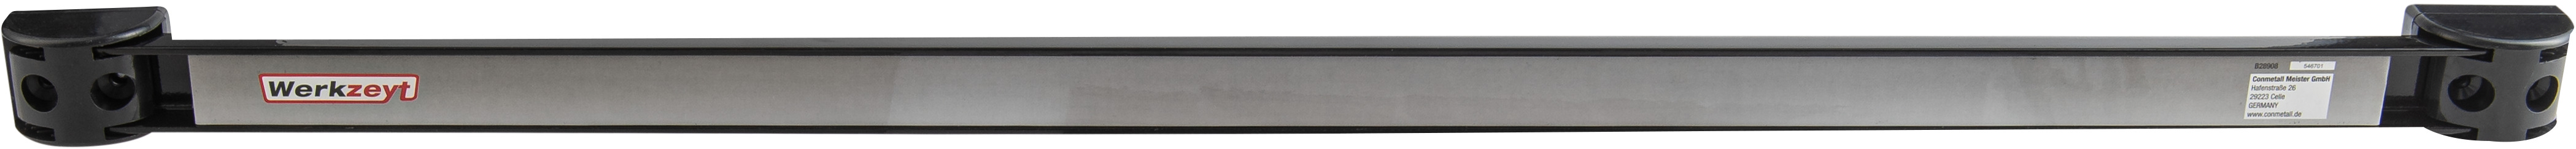 Werkzeyt Magnethalter, 61 cm